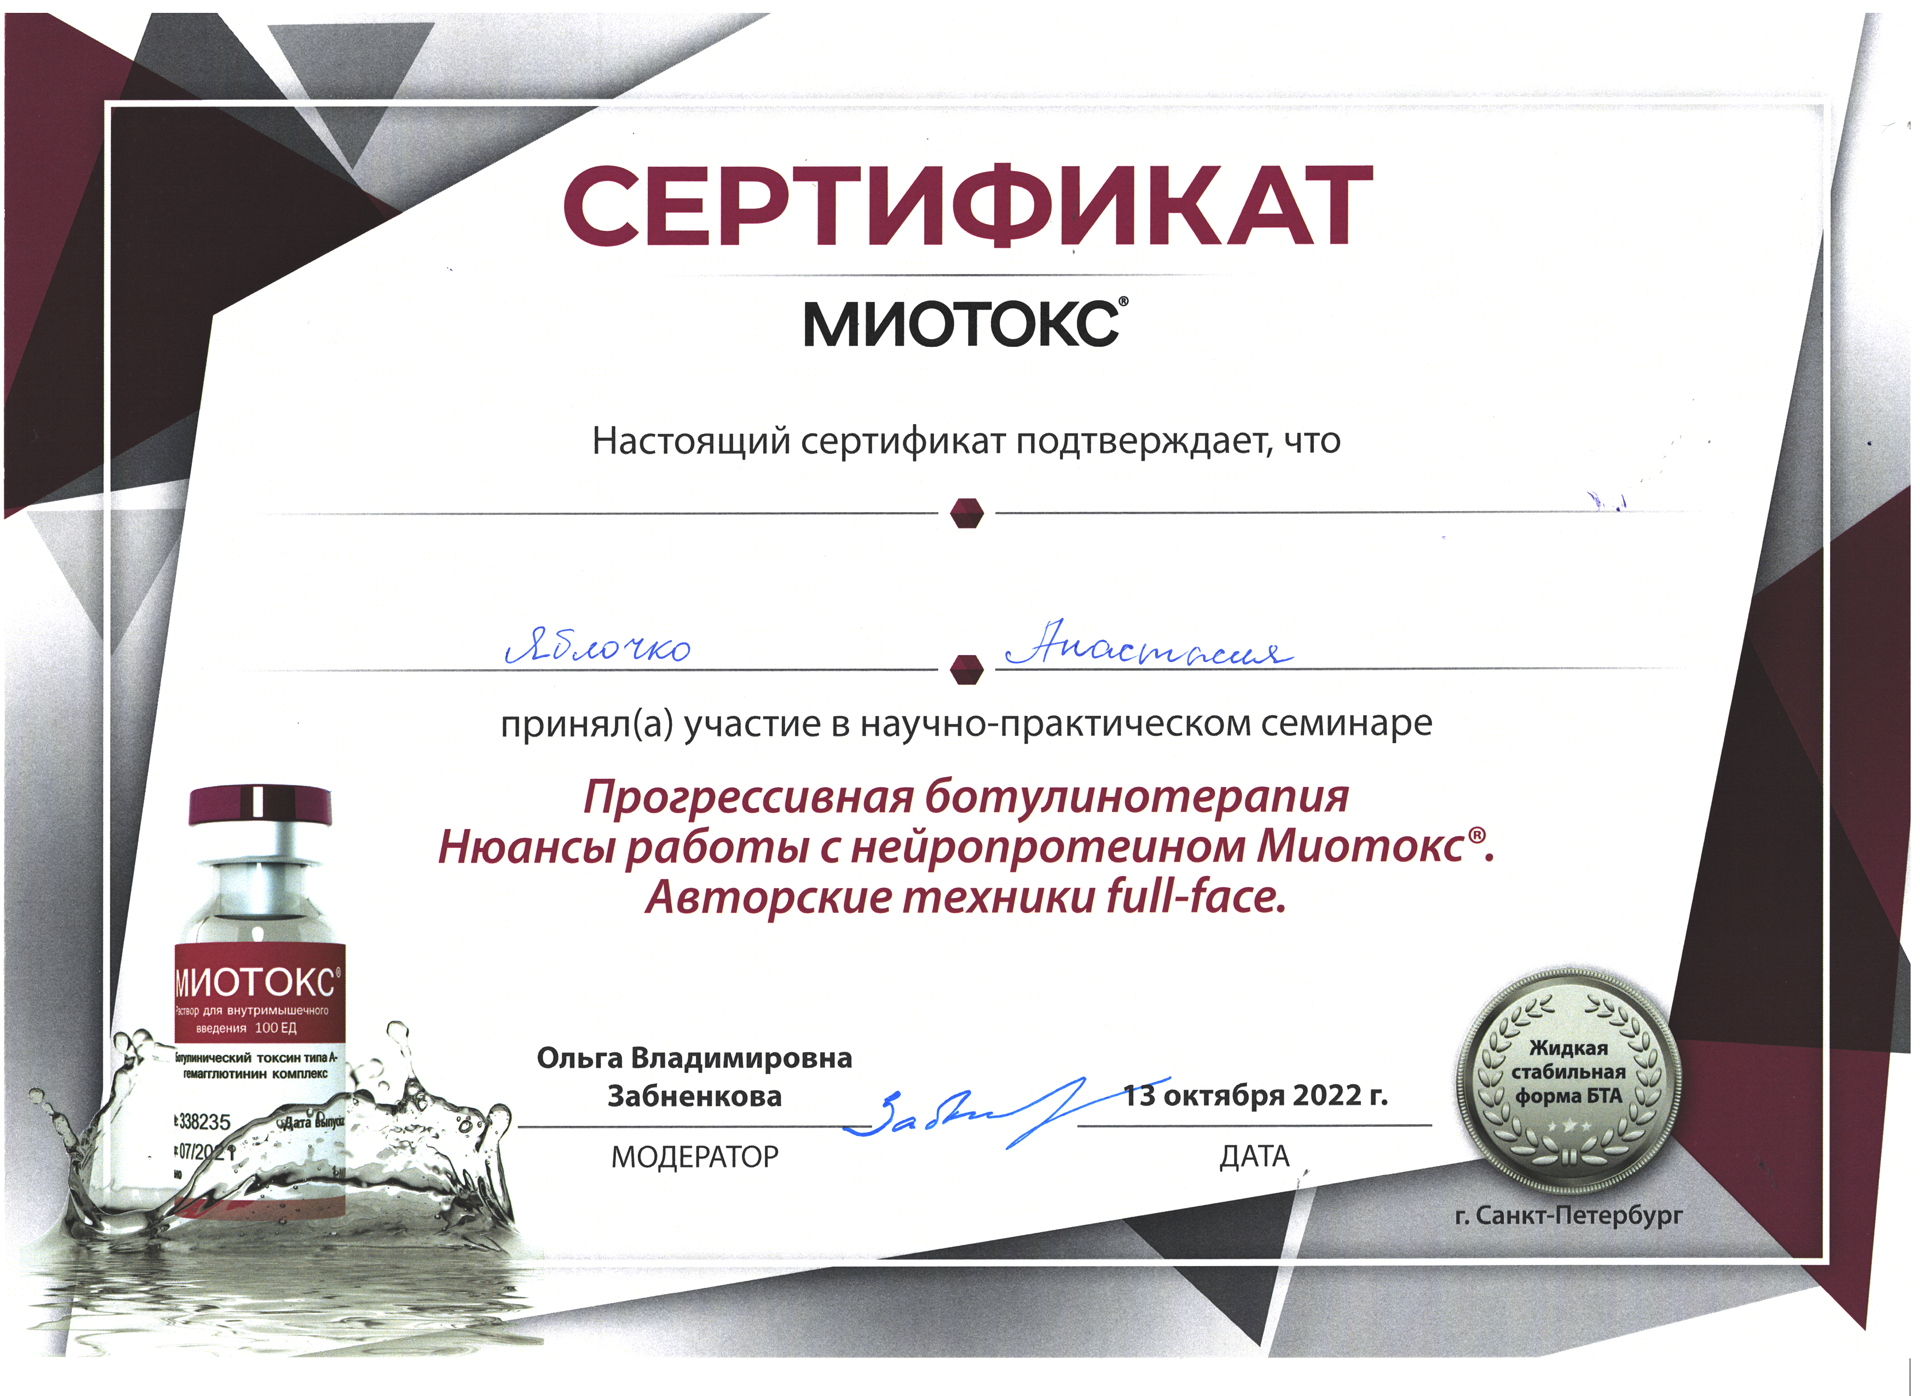 Сертификат — Семинар «Прогрессивная ботулинотерапия». Яблочко Анастасия Андреевна